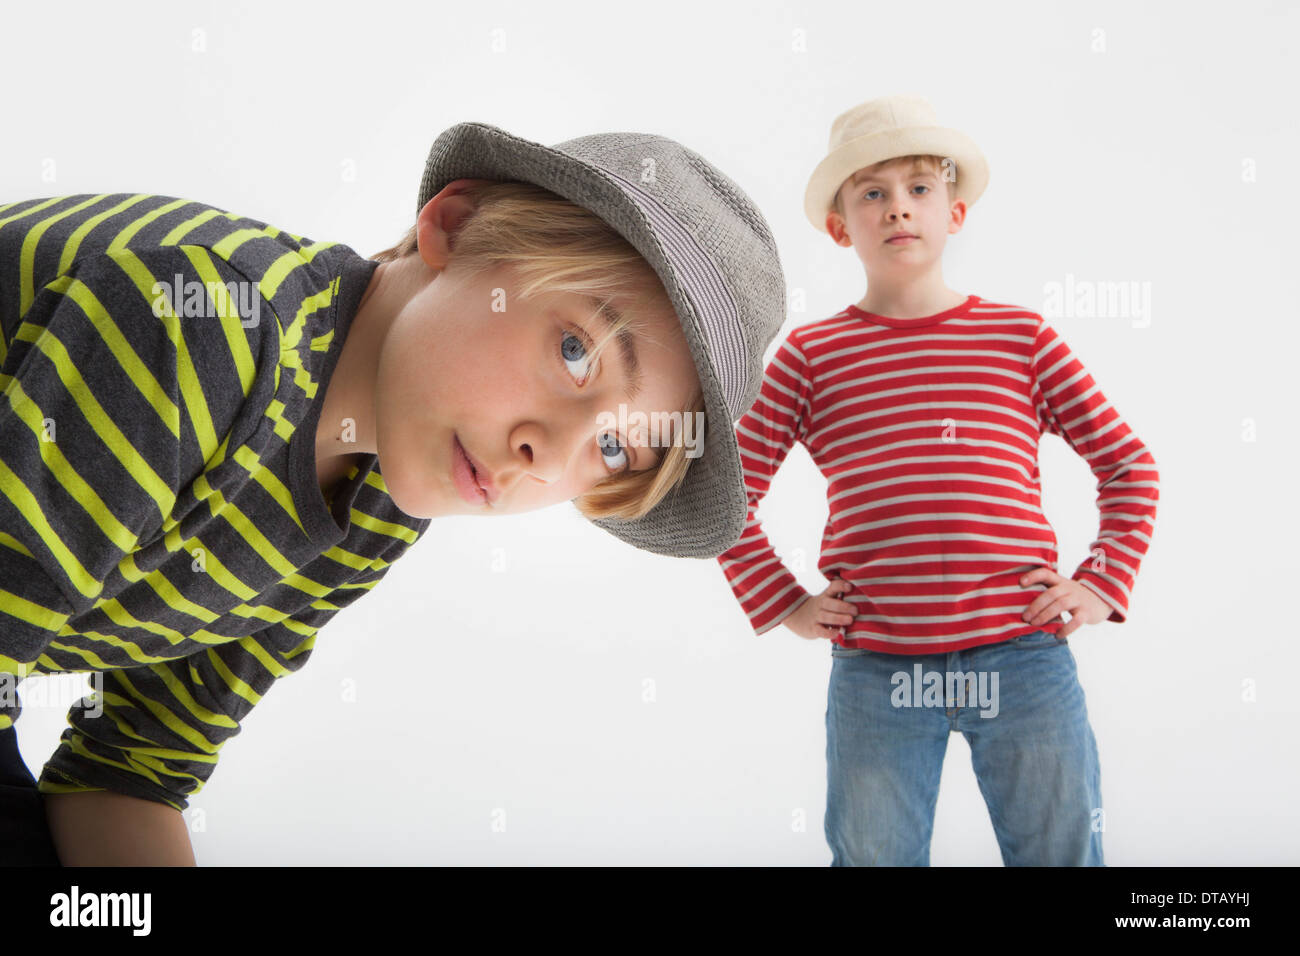 Ritratto di ragazzi contro uno sfondo bianco Foto Stock